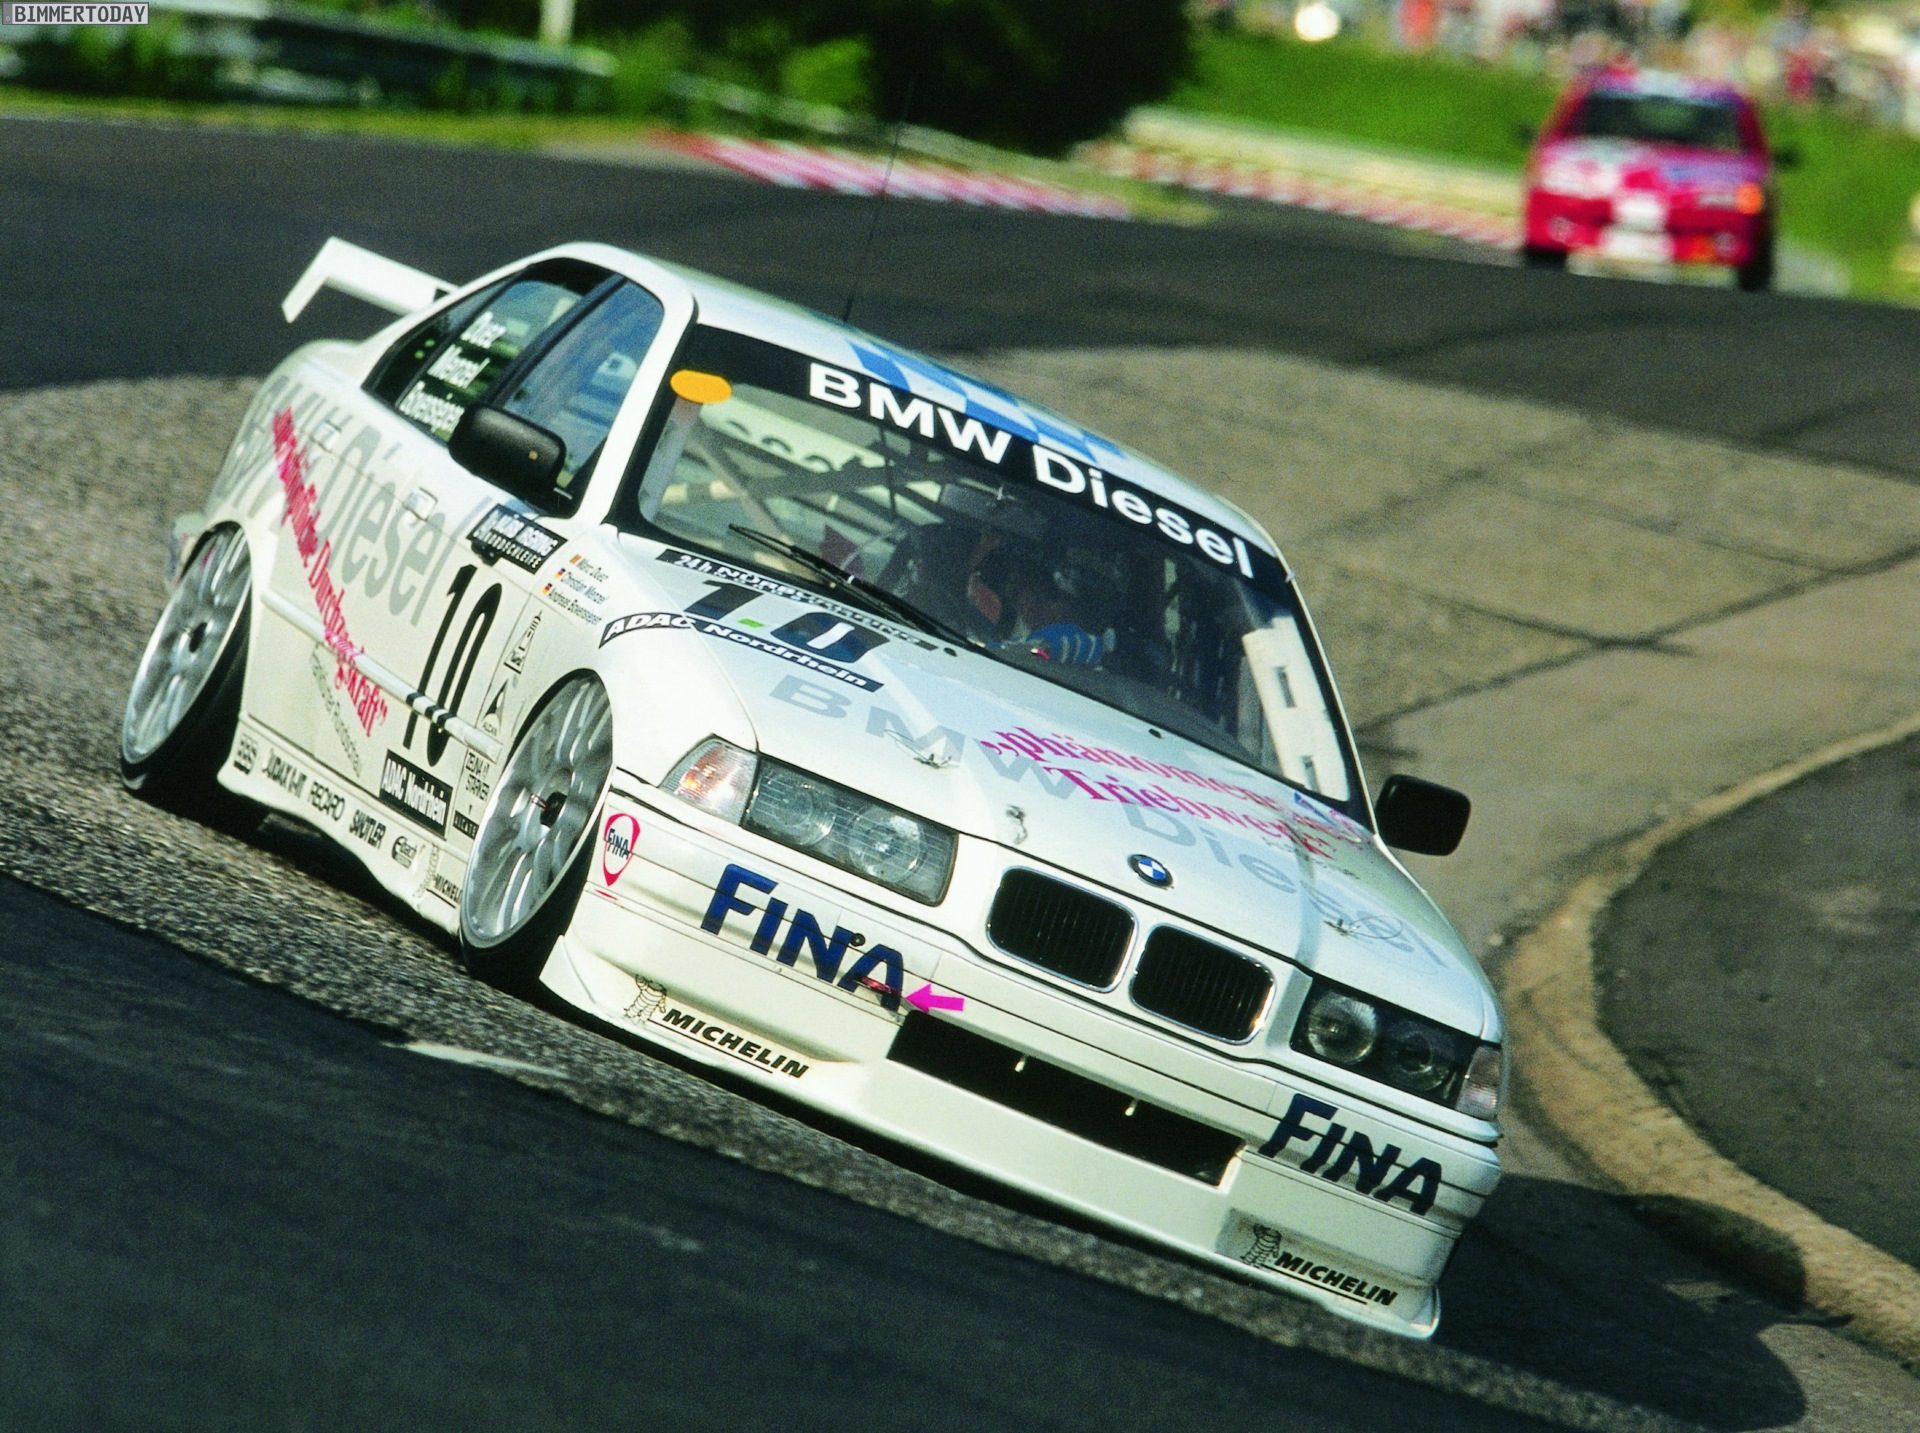 30-Jahre-BMW-Diesel-BMW-320d-E36-24h-Nuerburgring-1998-1.jpg